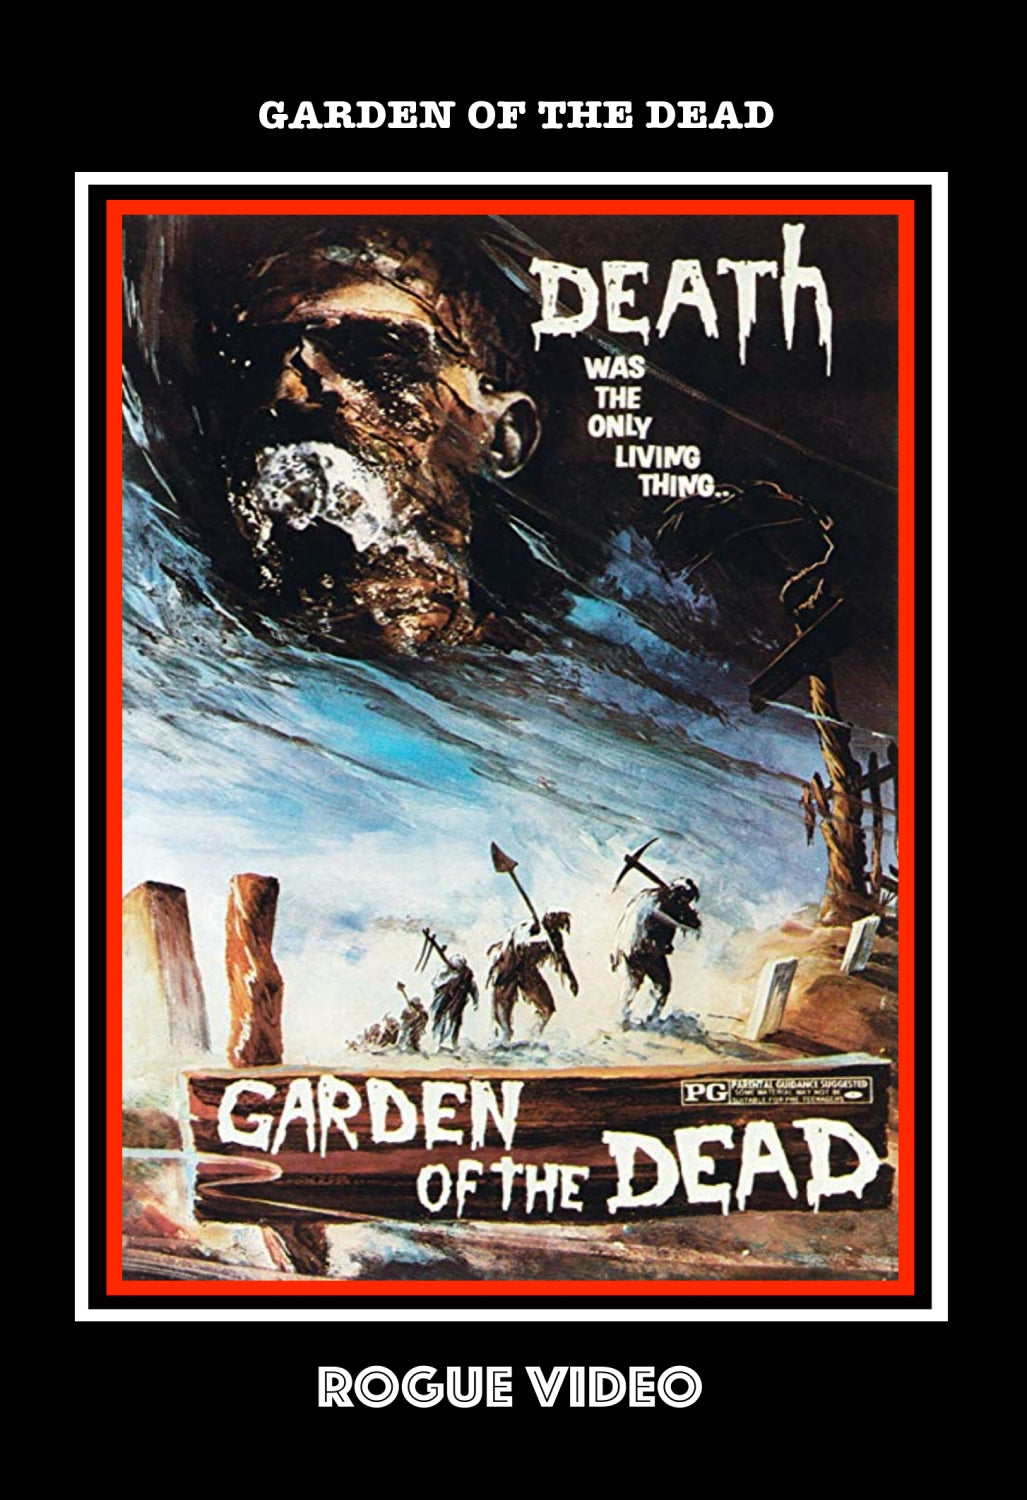 GARDEN OF THE DEAD (1972)